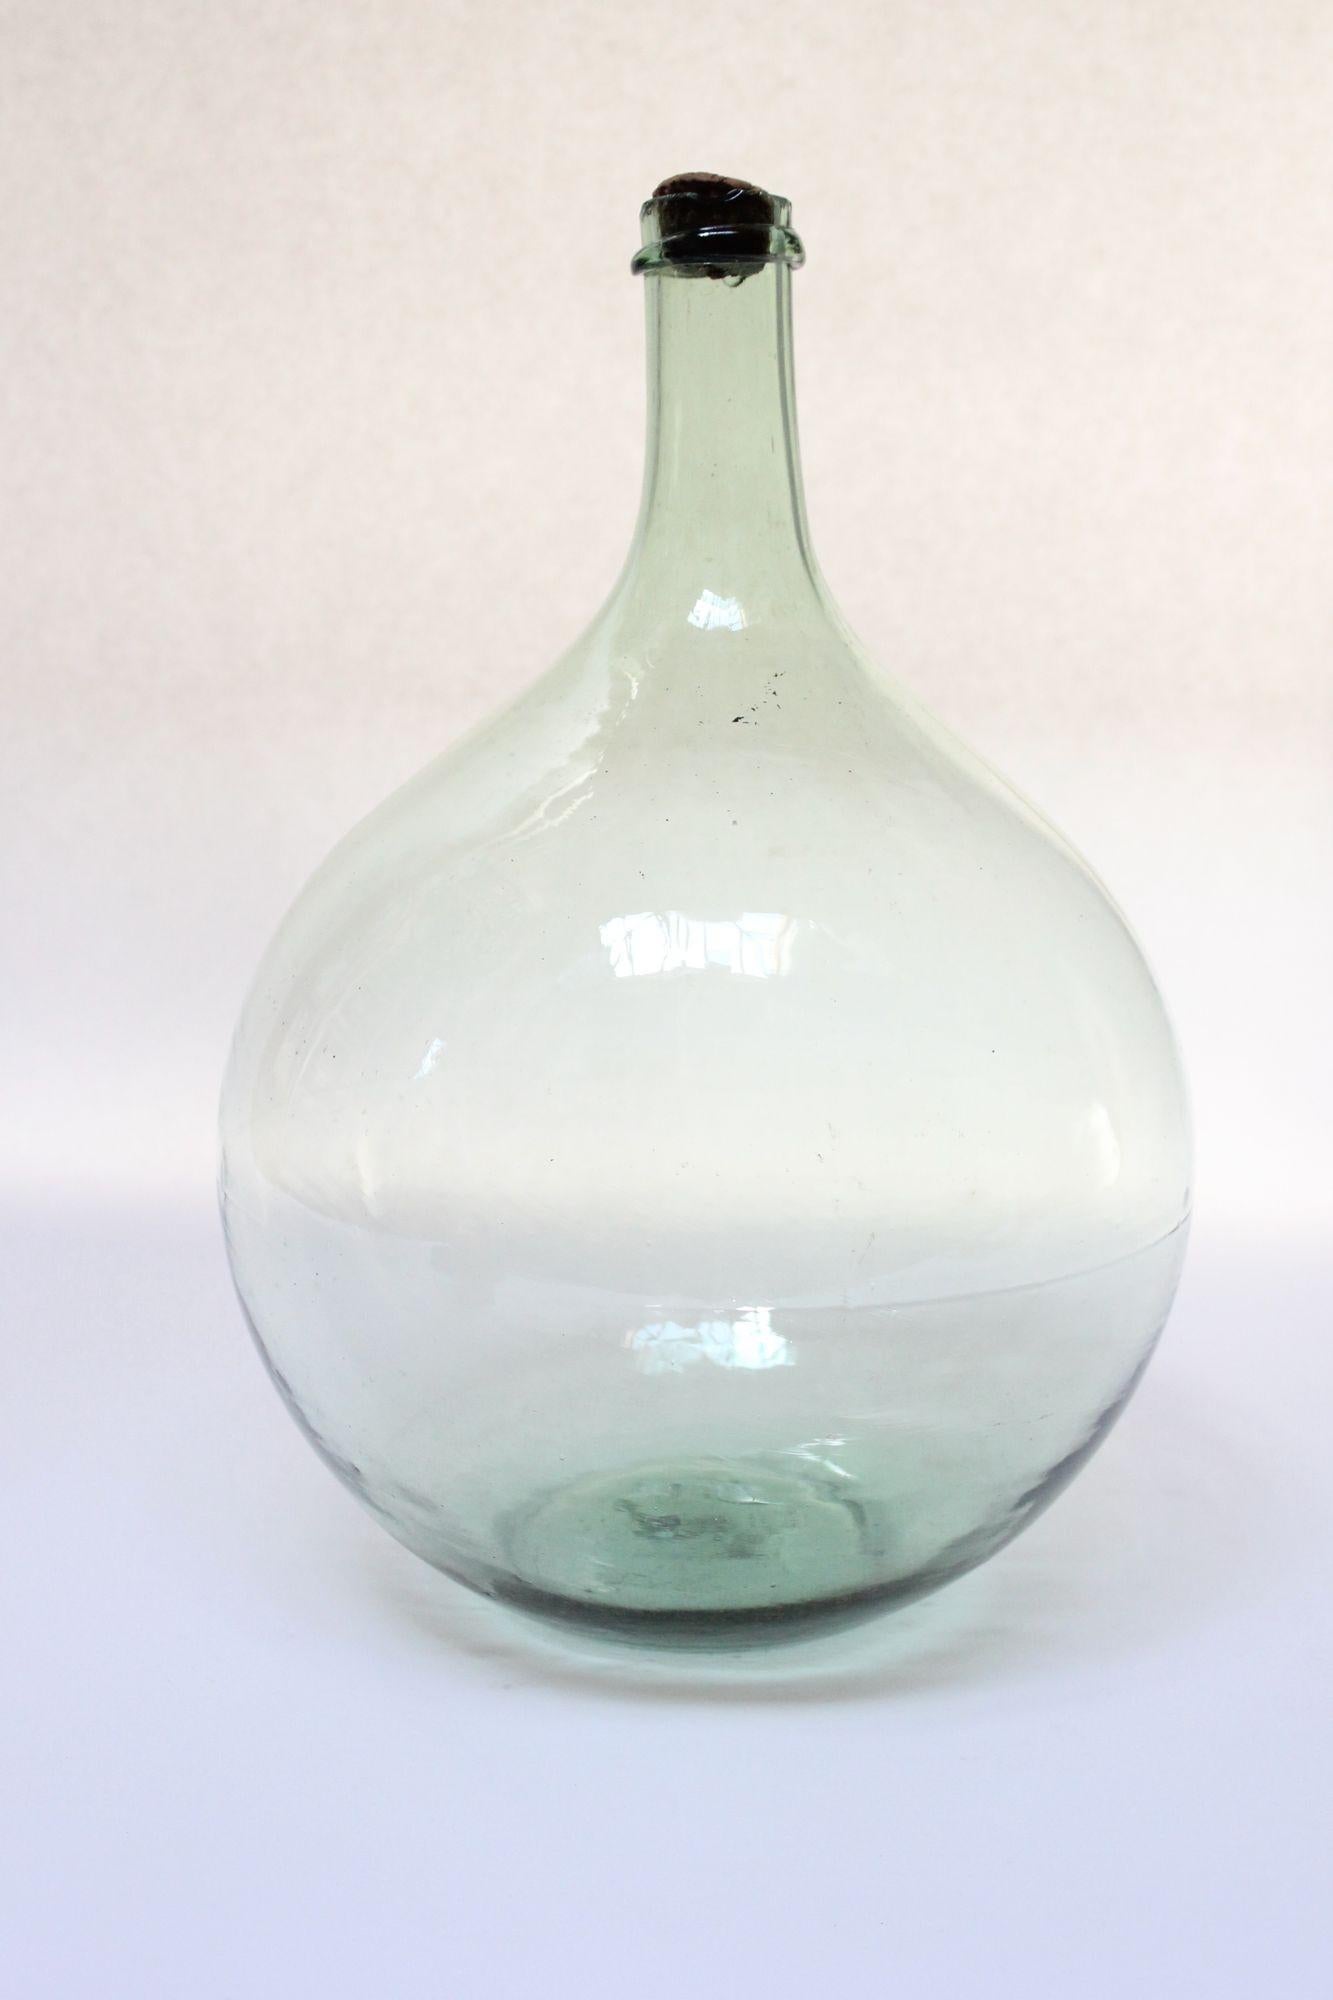 Hellgrüne Korbflasche, die ursprünglich für den Transport von Wein verwendet wurde (ca. Anfang des 20. Jahrhunderts, Frankreich).
Bestehend aus 